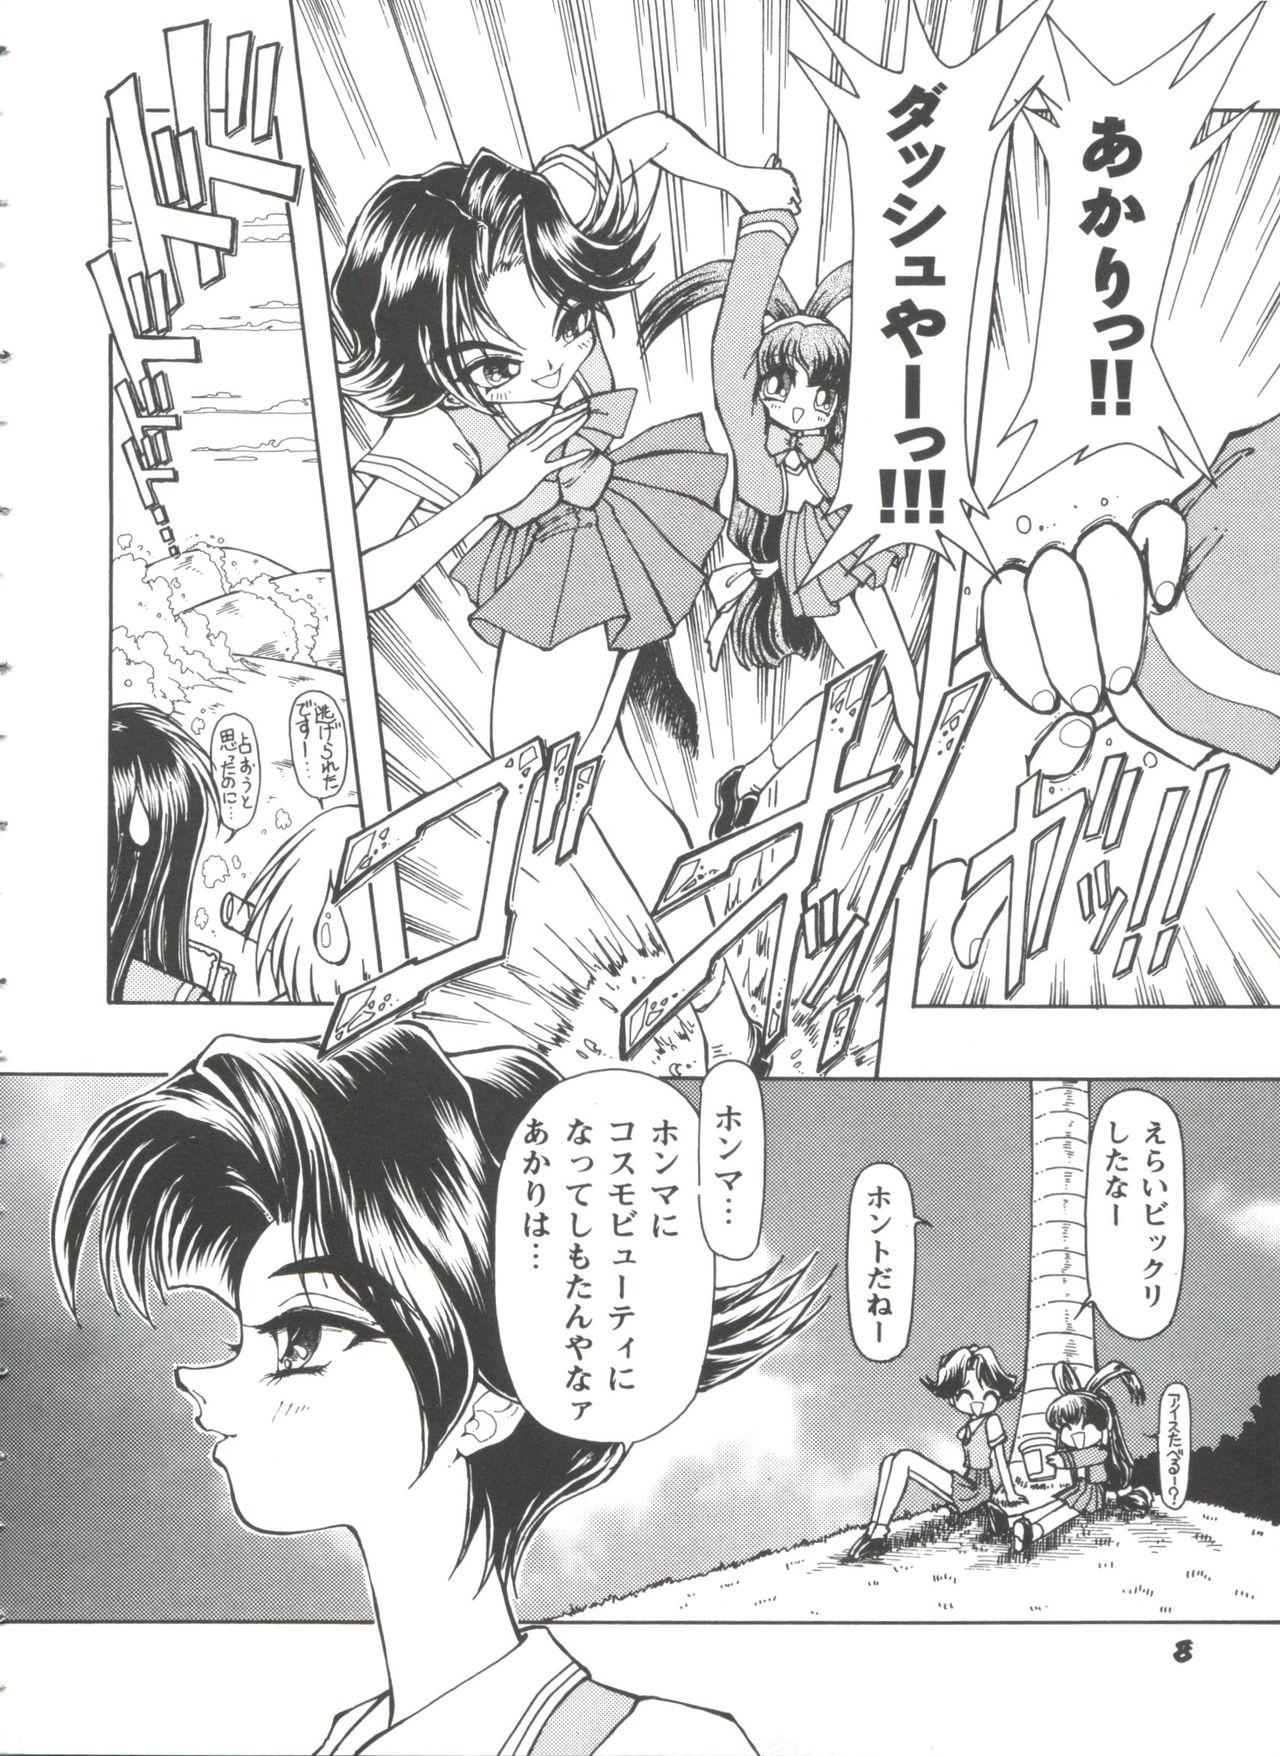 Black Hair Girl's Parade 98 Take 10 - Street fighter Darkstalkers Sakura taisen Battle athletes Akihabara dennou gumi Livesex - Page 9